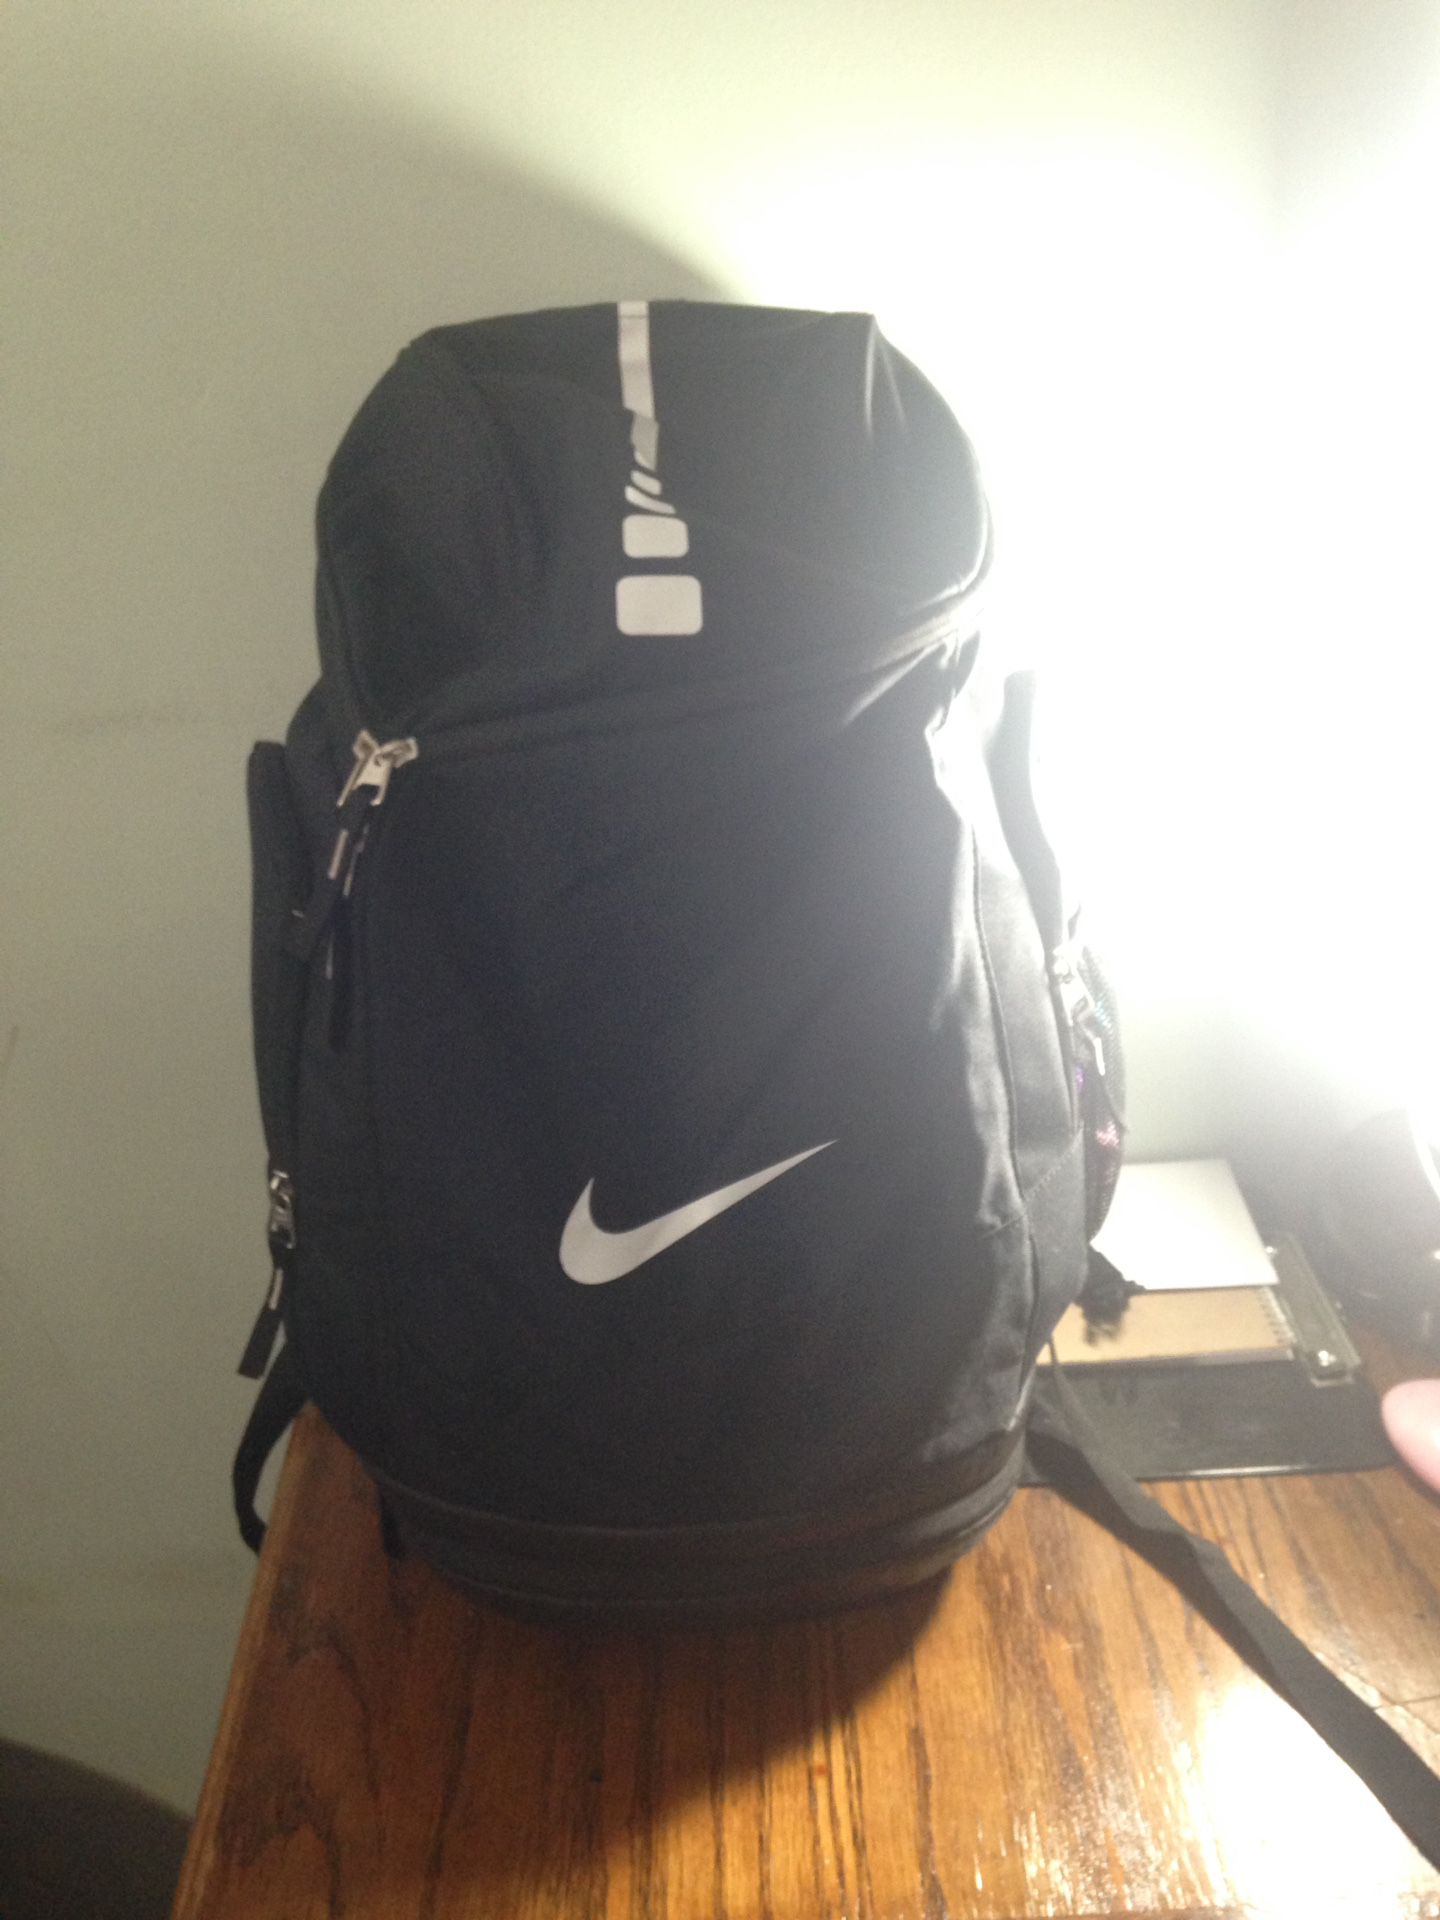 Nike max air book bag